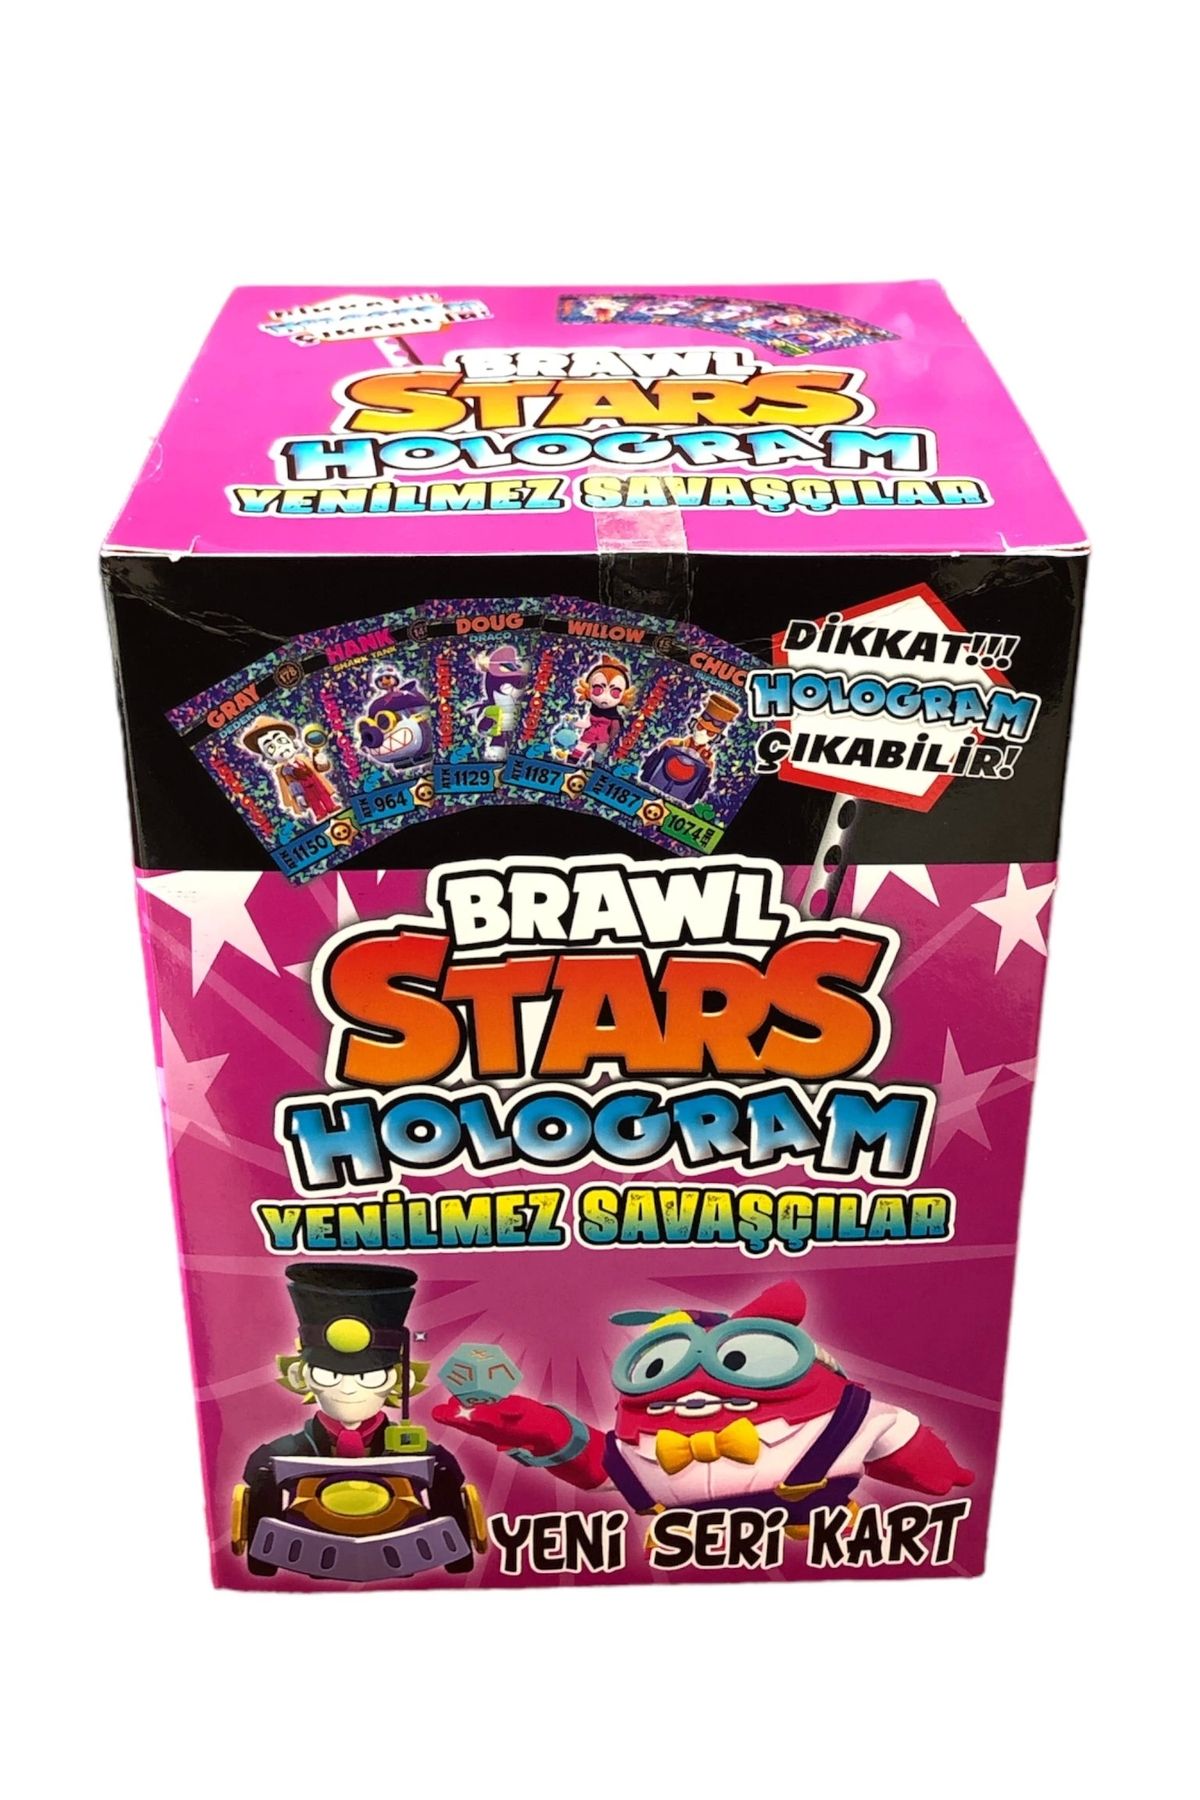 alisverisdevi Brawl stars dikkat hologram çıkabilir yenilmez savaşçılar 200 adet 2li kart yeni seri kart